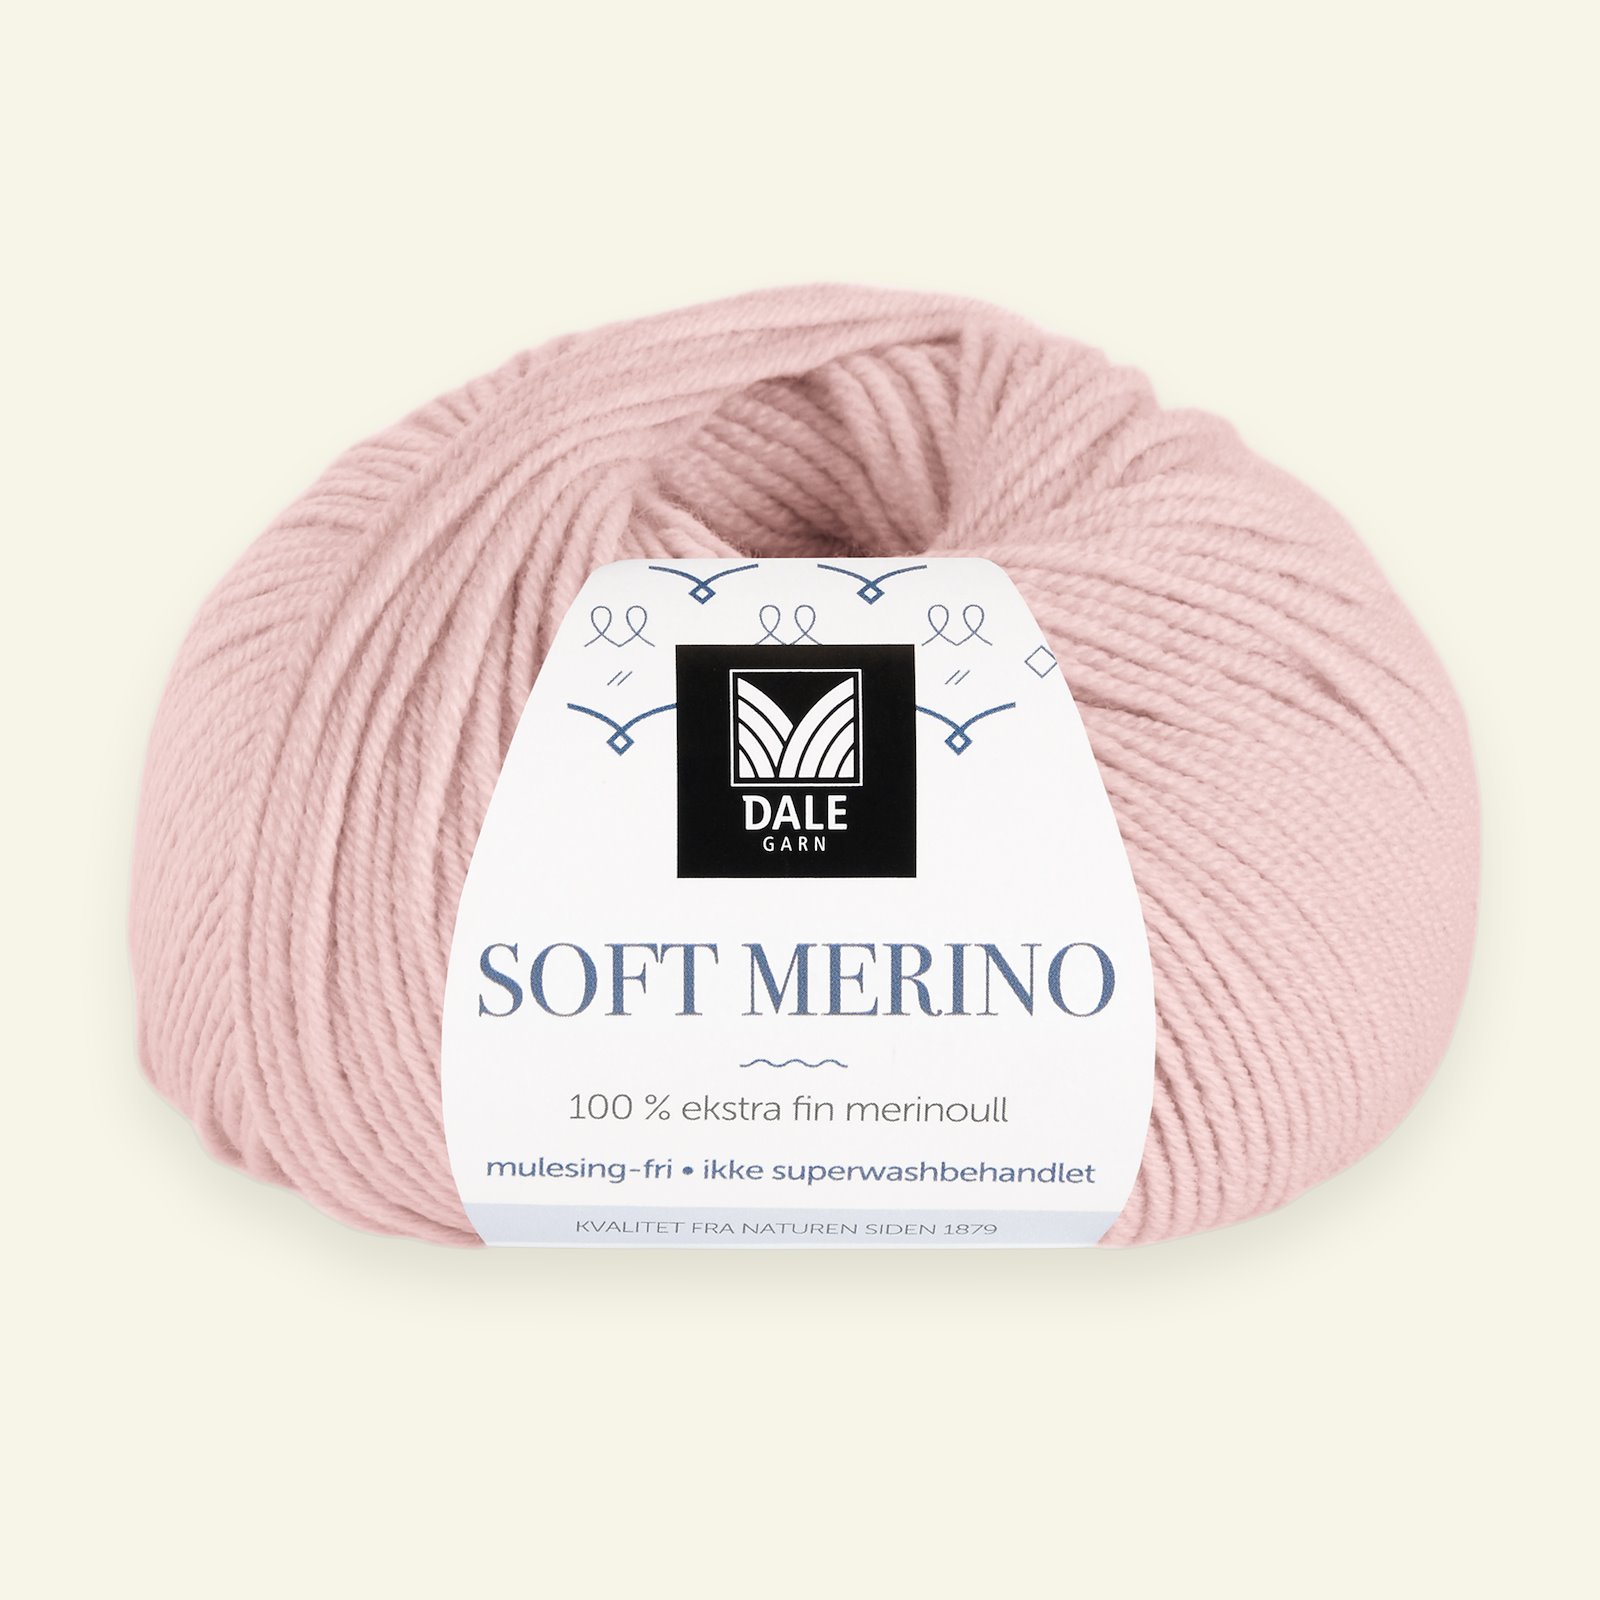 Dale Garn, 100% extra fine merino wool yarn, "Soft Merino", rose (3018) 90000339_pack